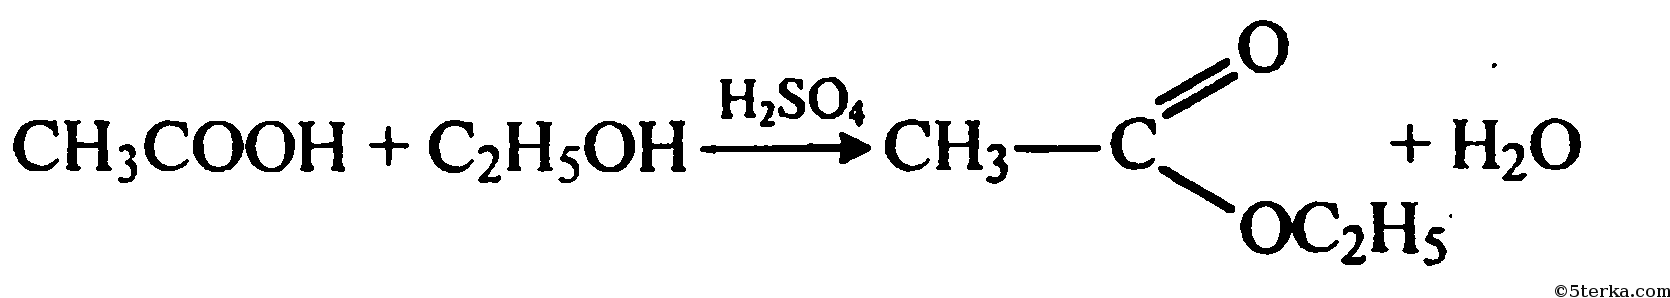 Глюкоза этанол уксусная кислота этиловый эфир. Окисление метанола на Медном катализаторе. Уксусный альдегид и гидроксид меди 2. Уксусный альдегид плюс гидроксид меди 2.